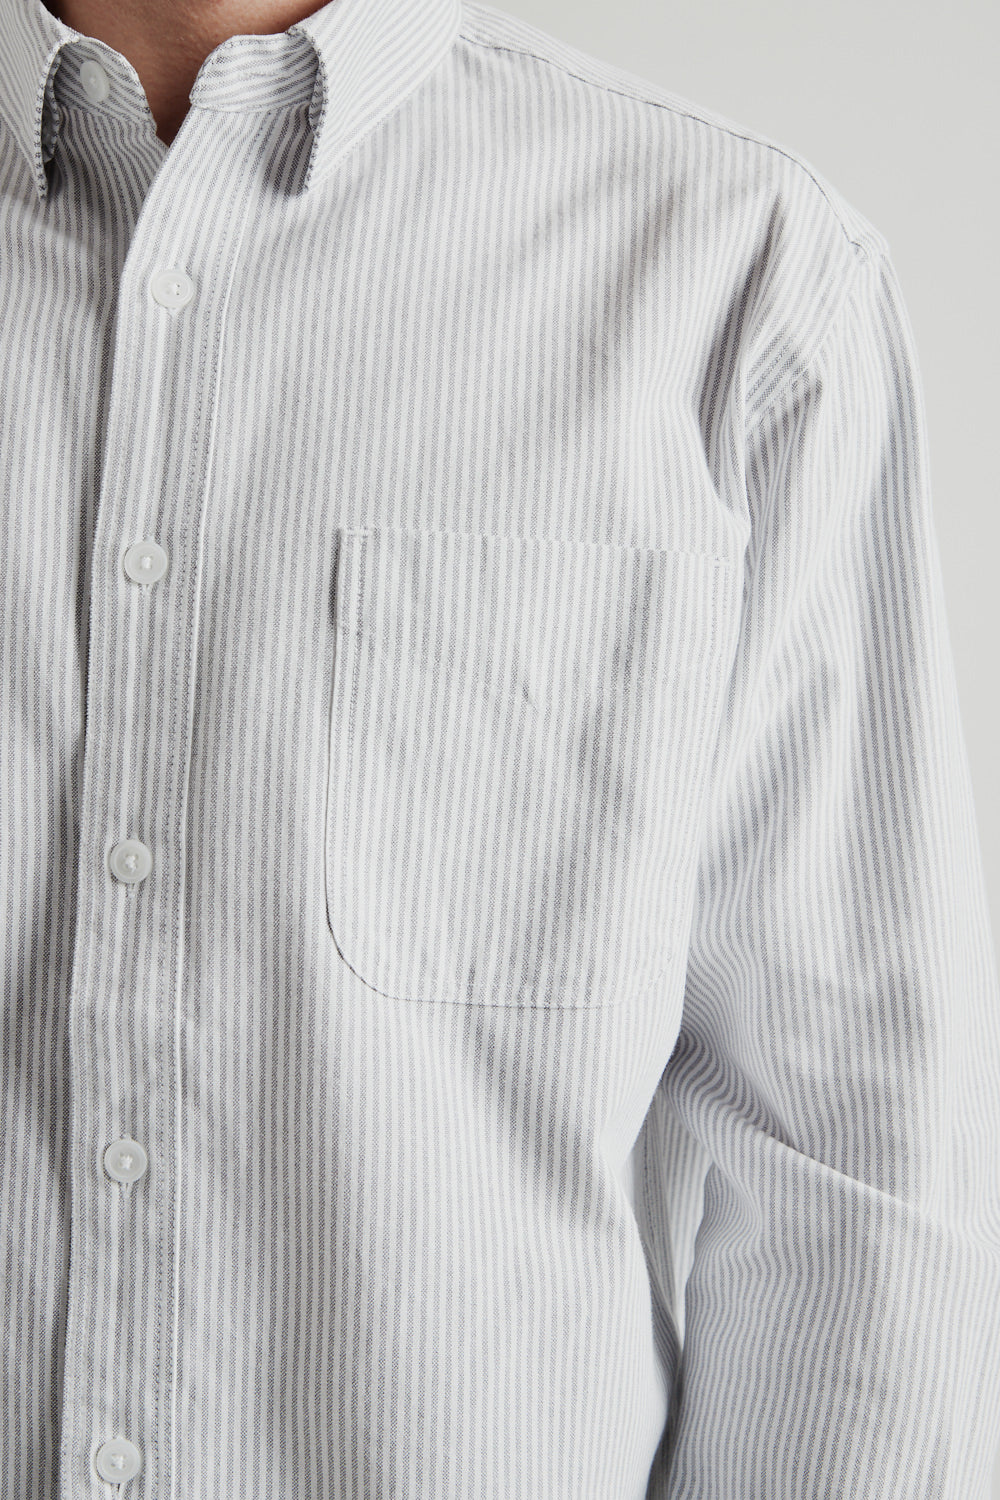 Frizmworks OG Stripe Oversized Shirt in Gray